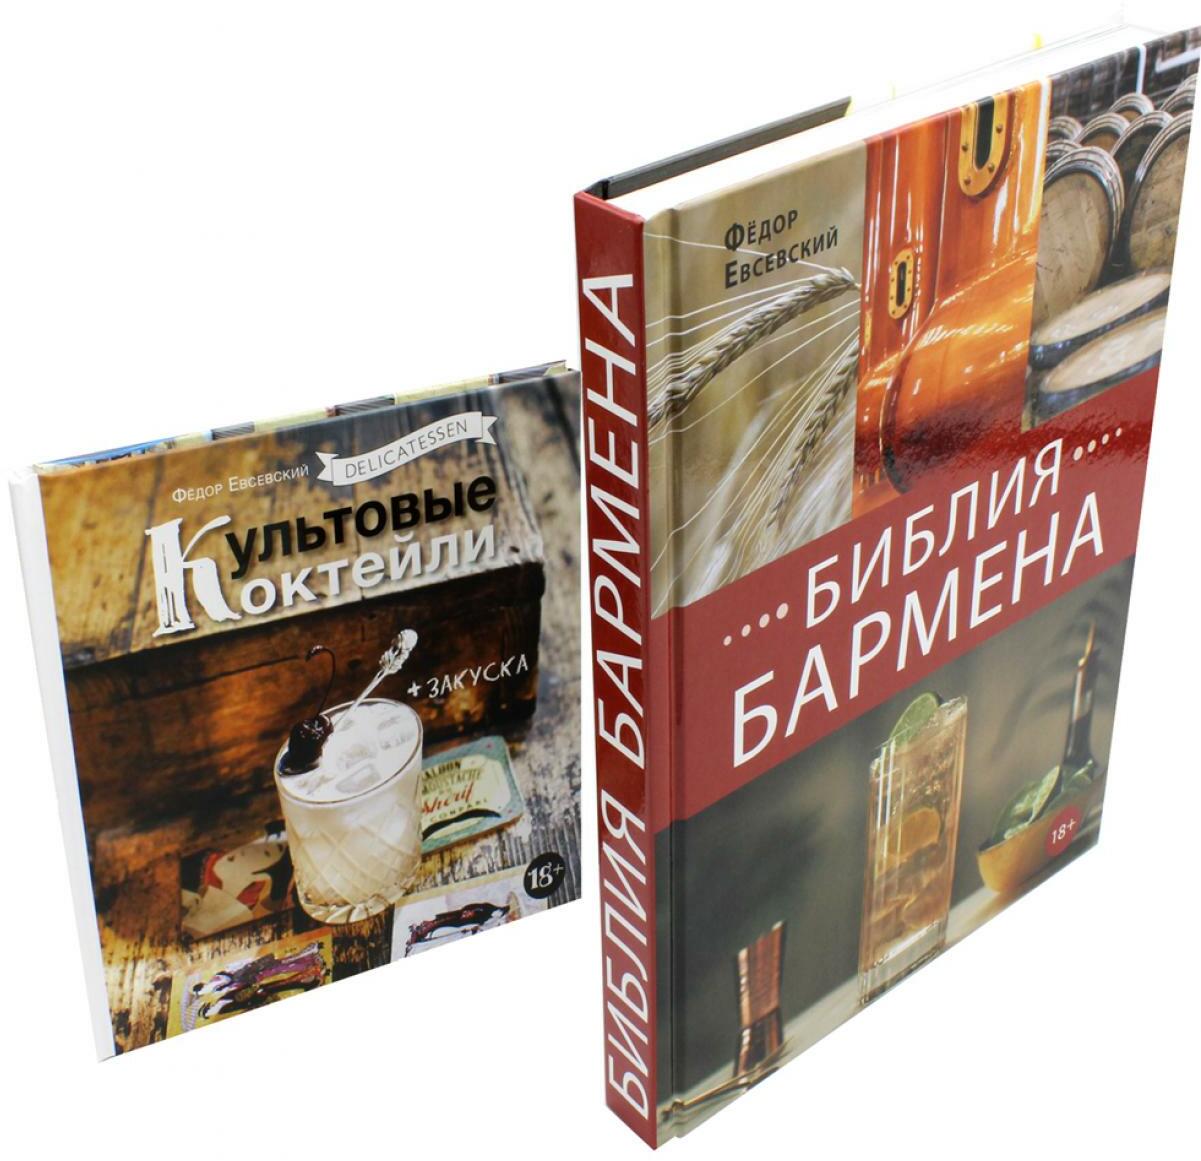 Библия бармена + Delicatessen. Культовые коктейли + закуска (комплект из 2-х книг)